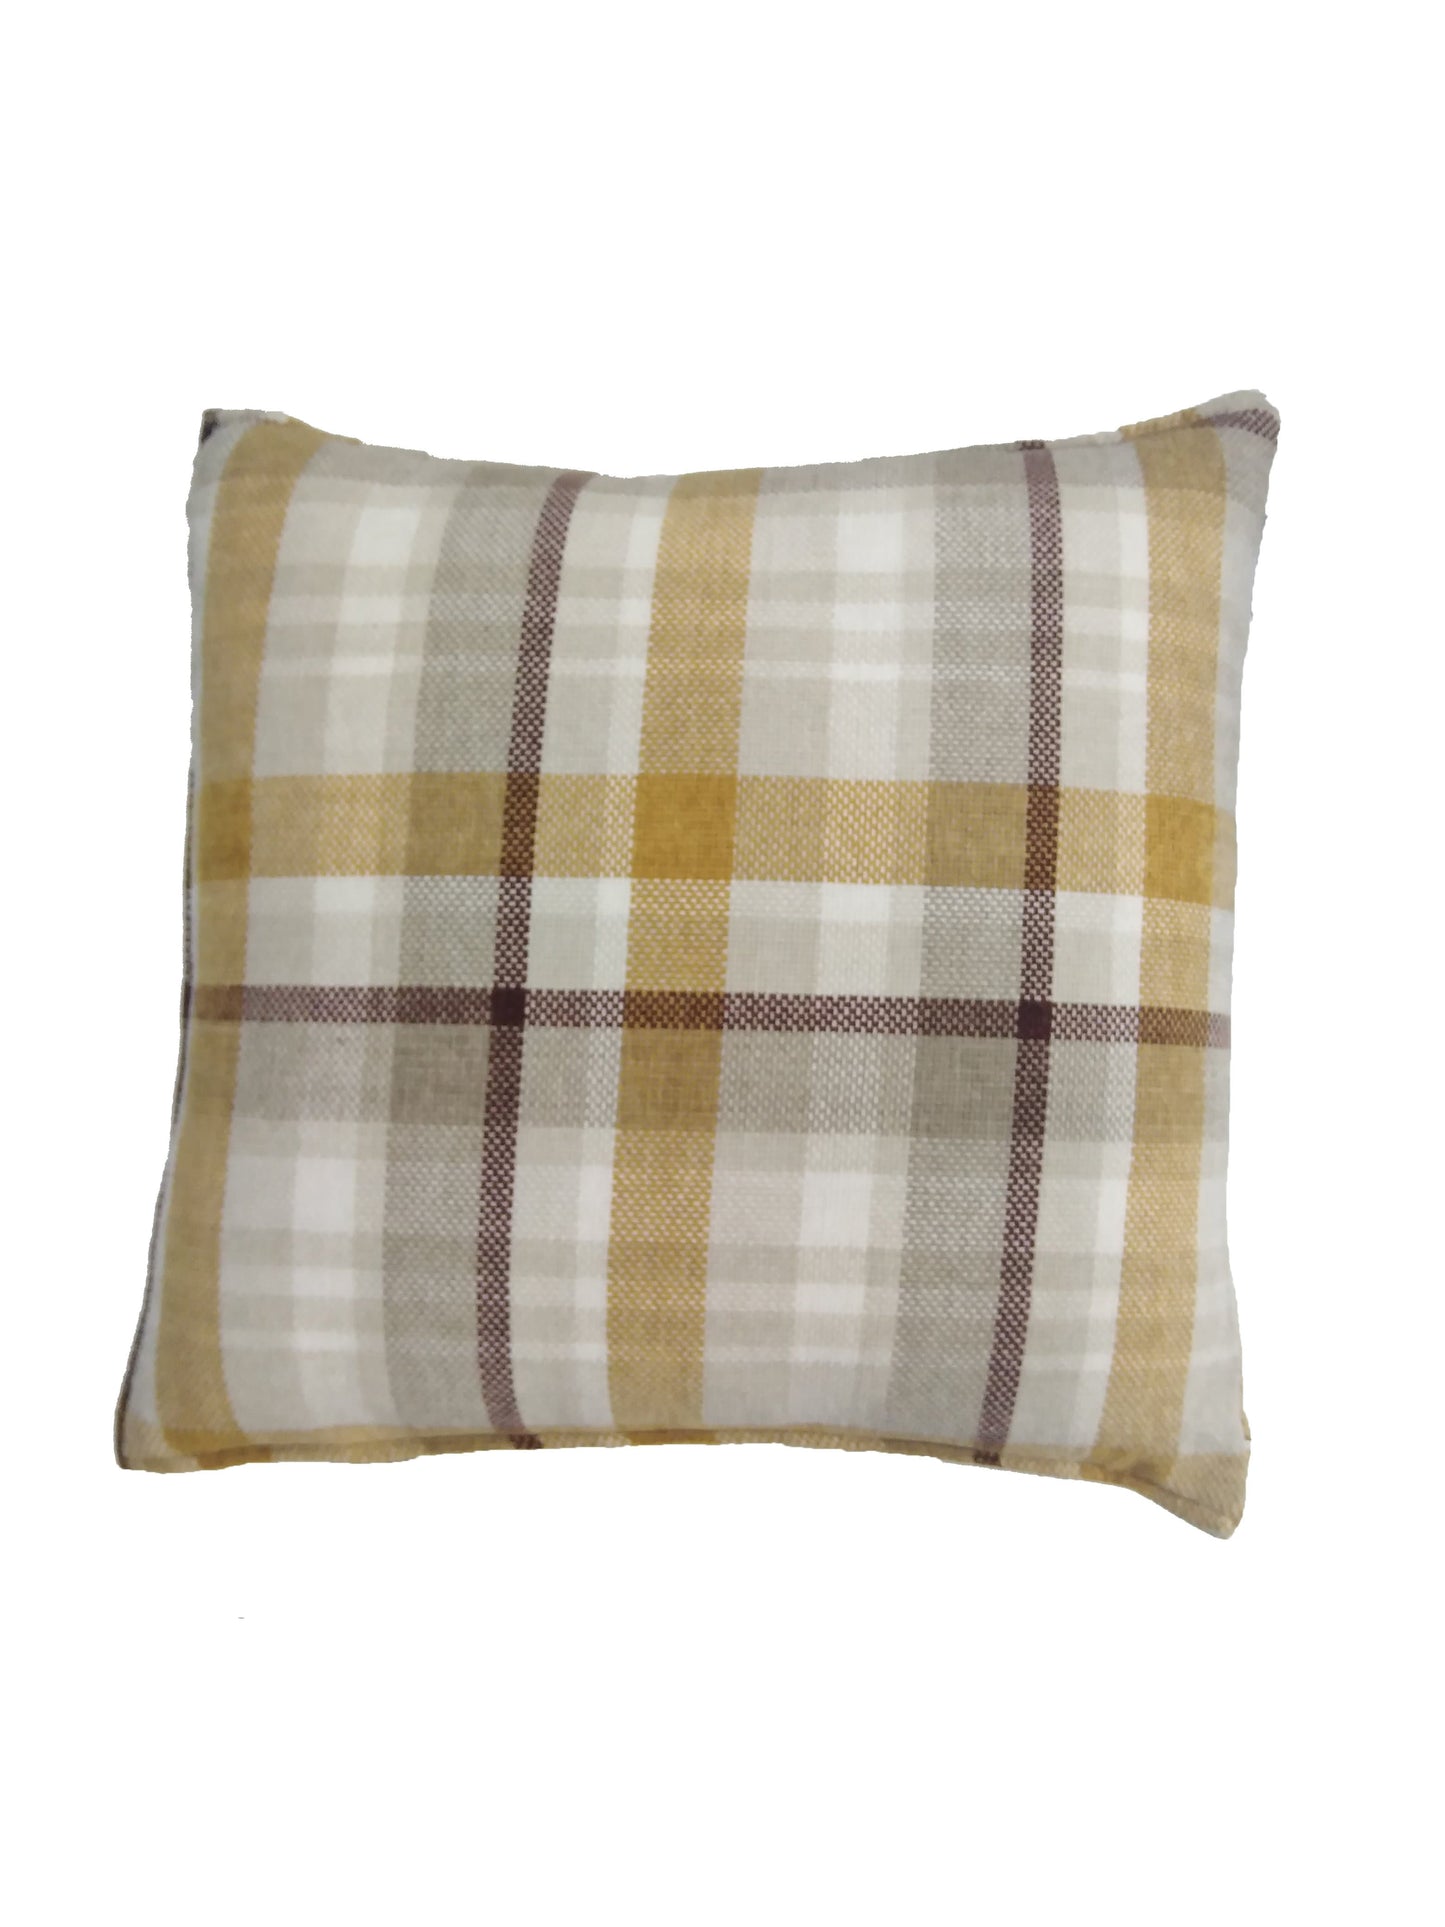 Brands & Beyond Pillows 46 cm x 46 cm / Multi-Color Decorative Pillows // roudaina